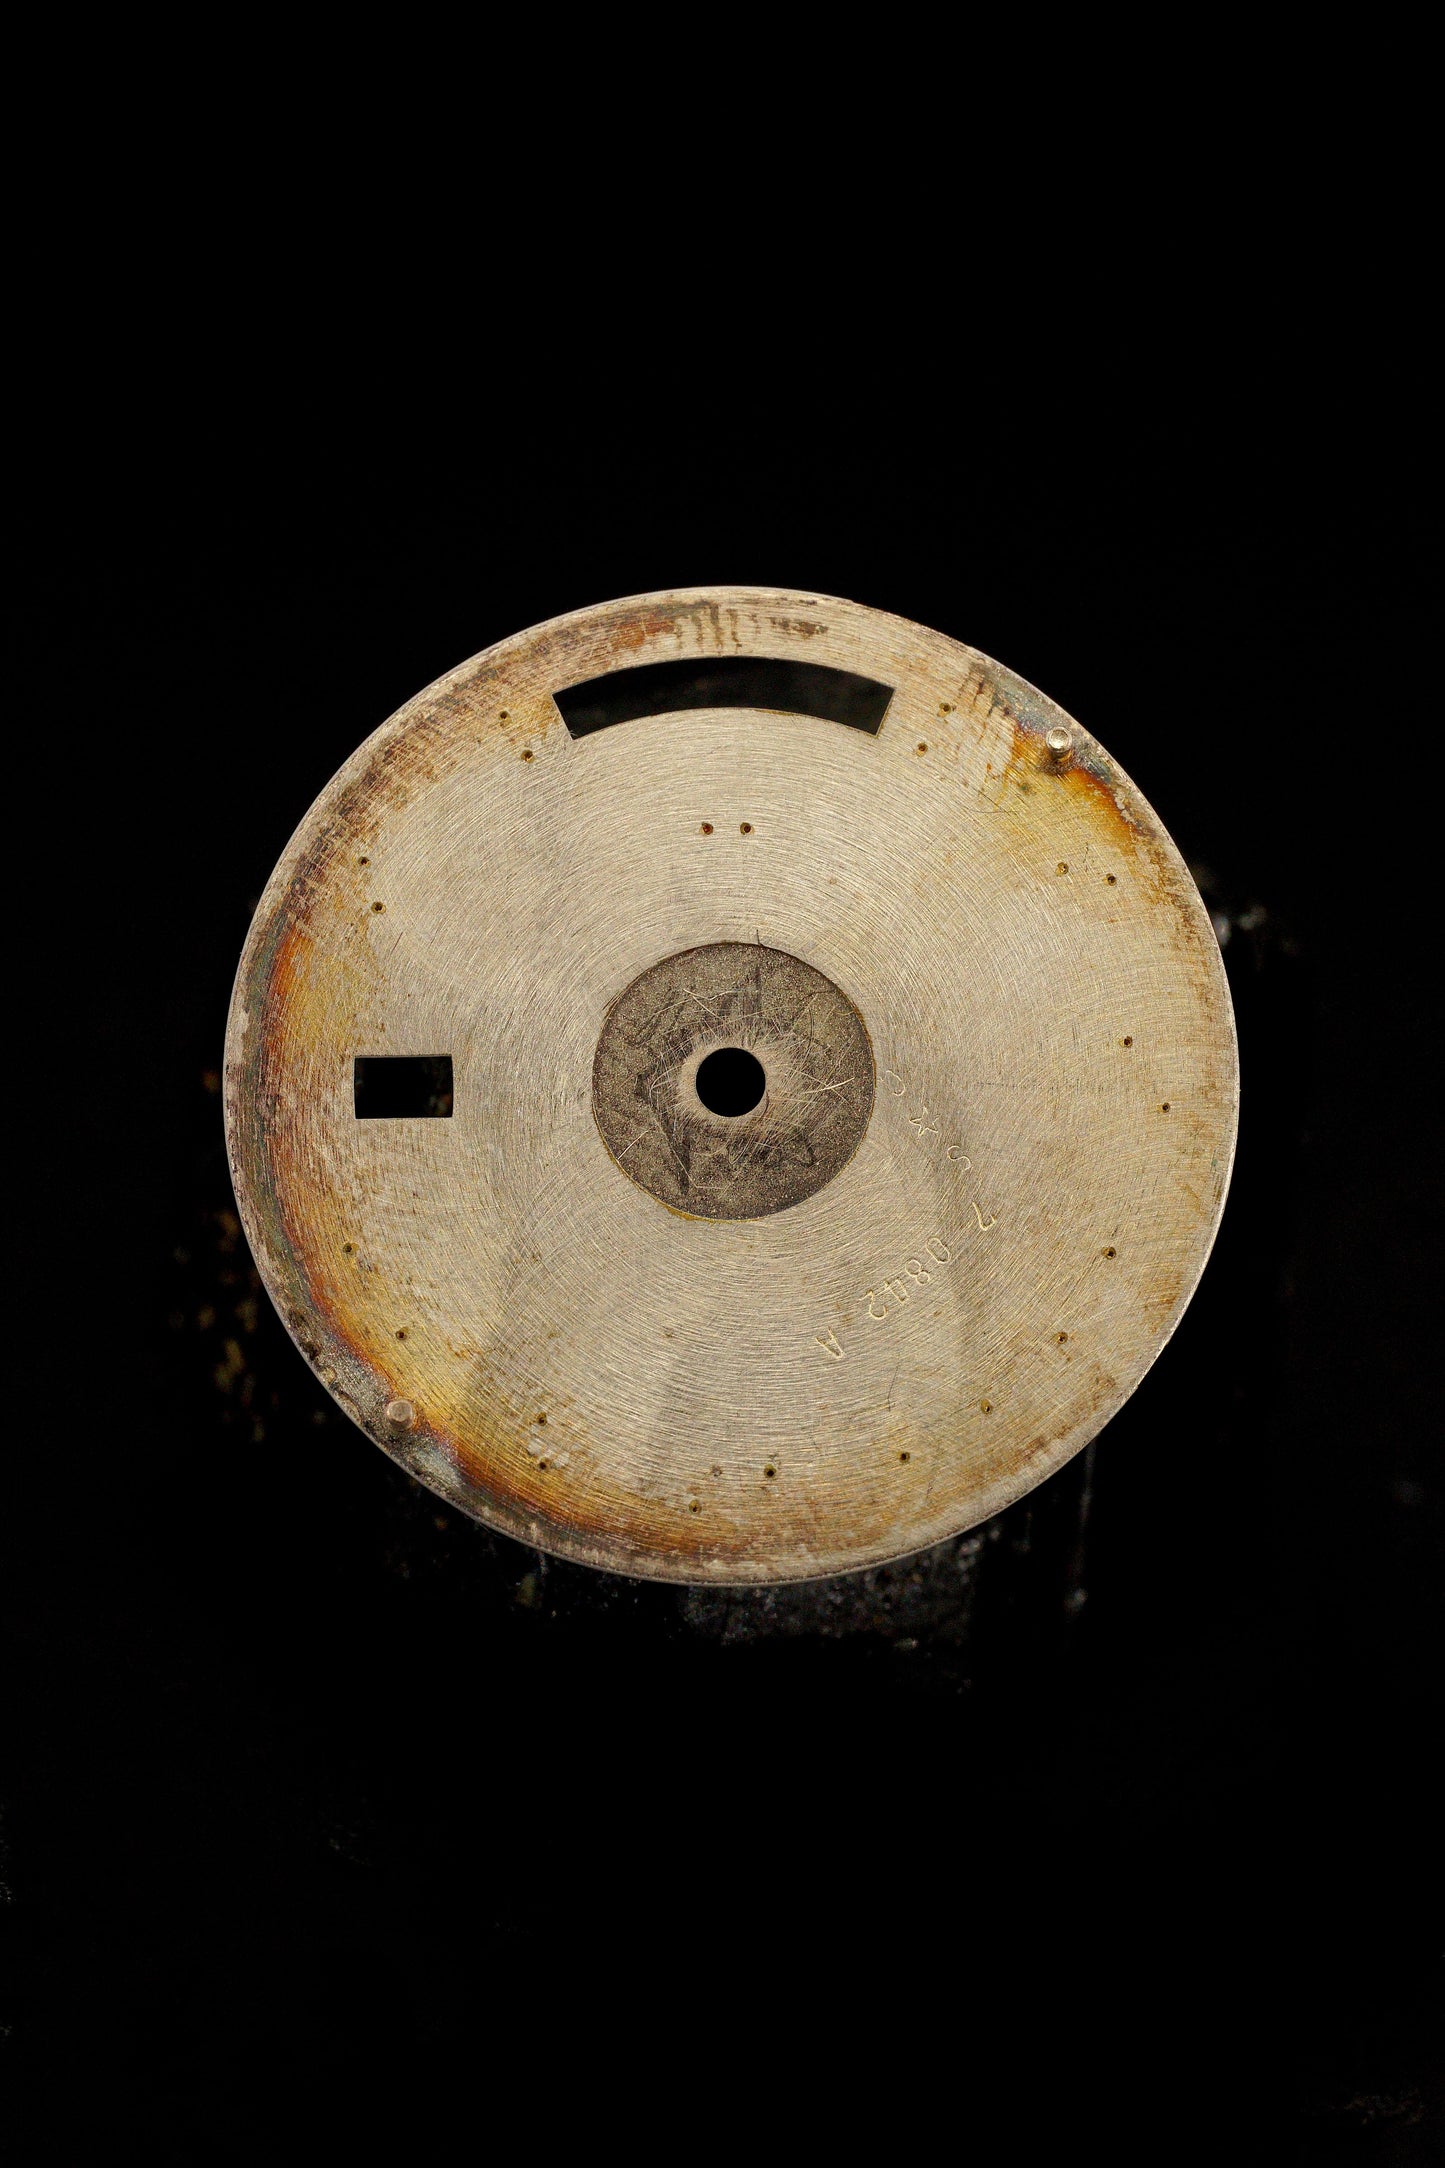 Rolex ,,White Roman'' Zifferblatt für OP Day-Date 36mm 18038 | 18238 Tritium